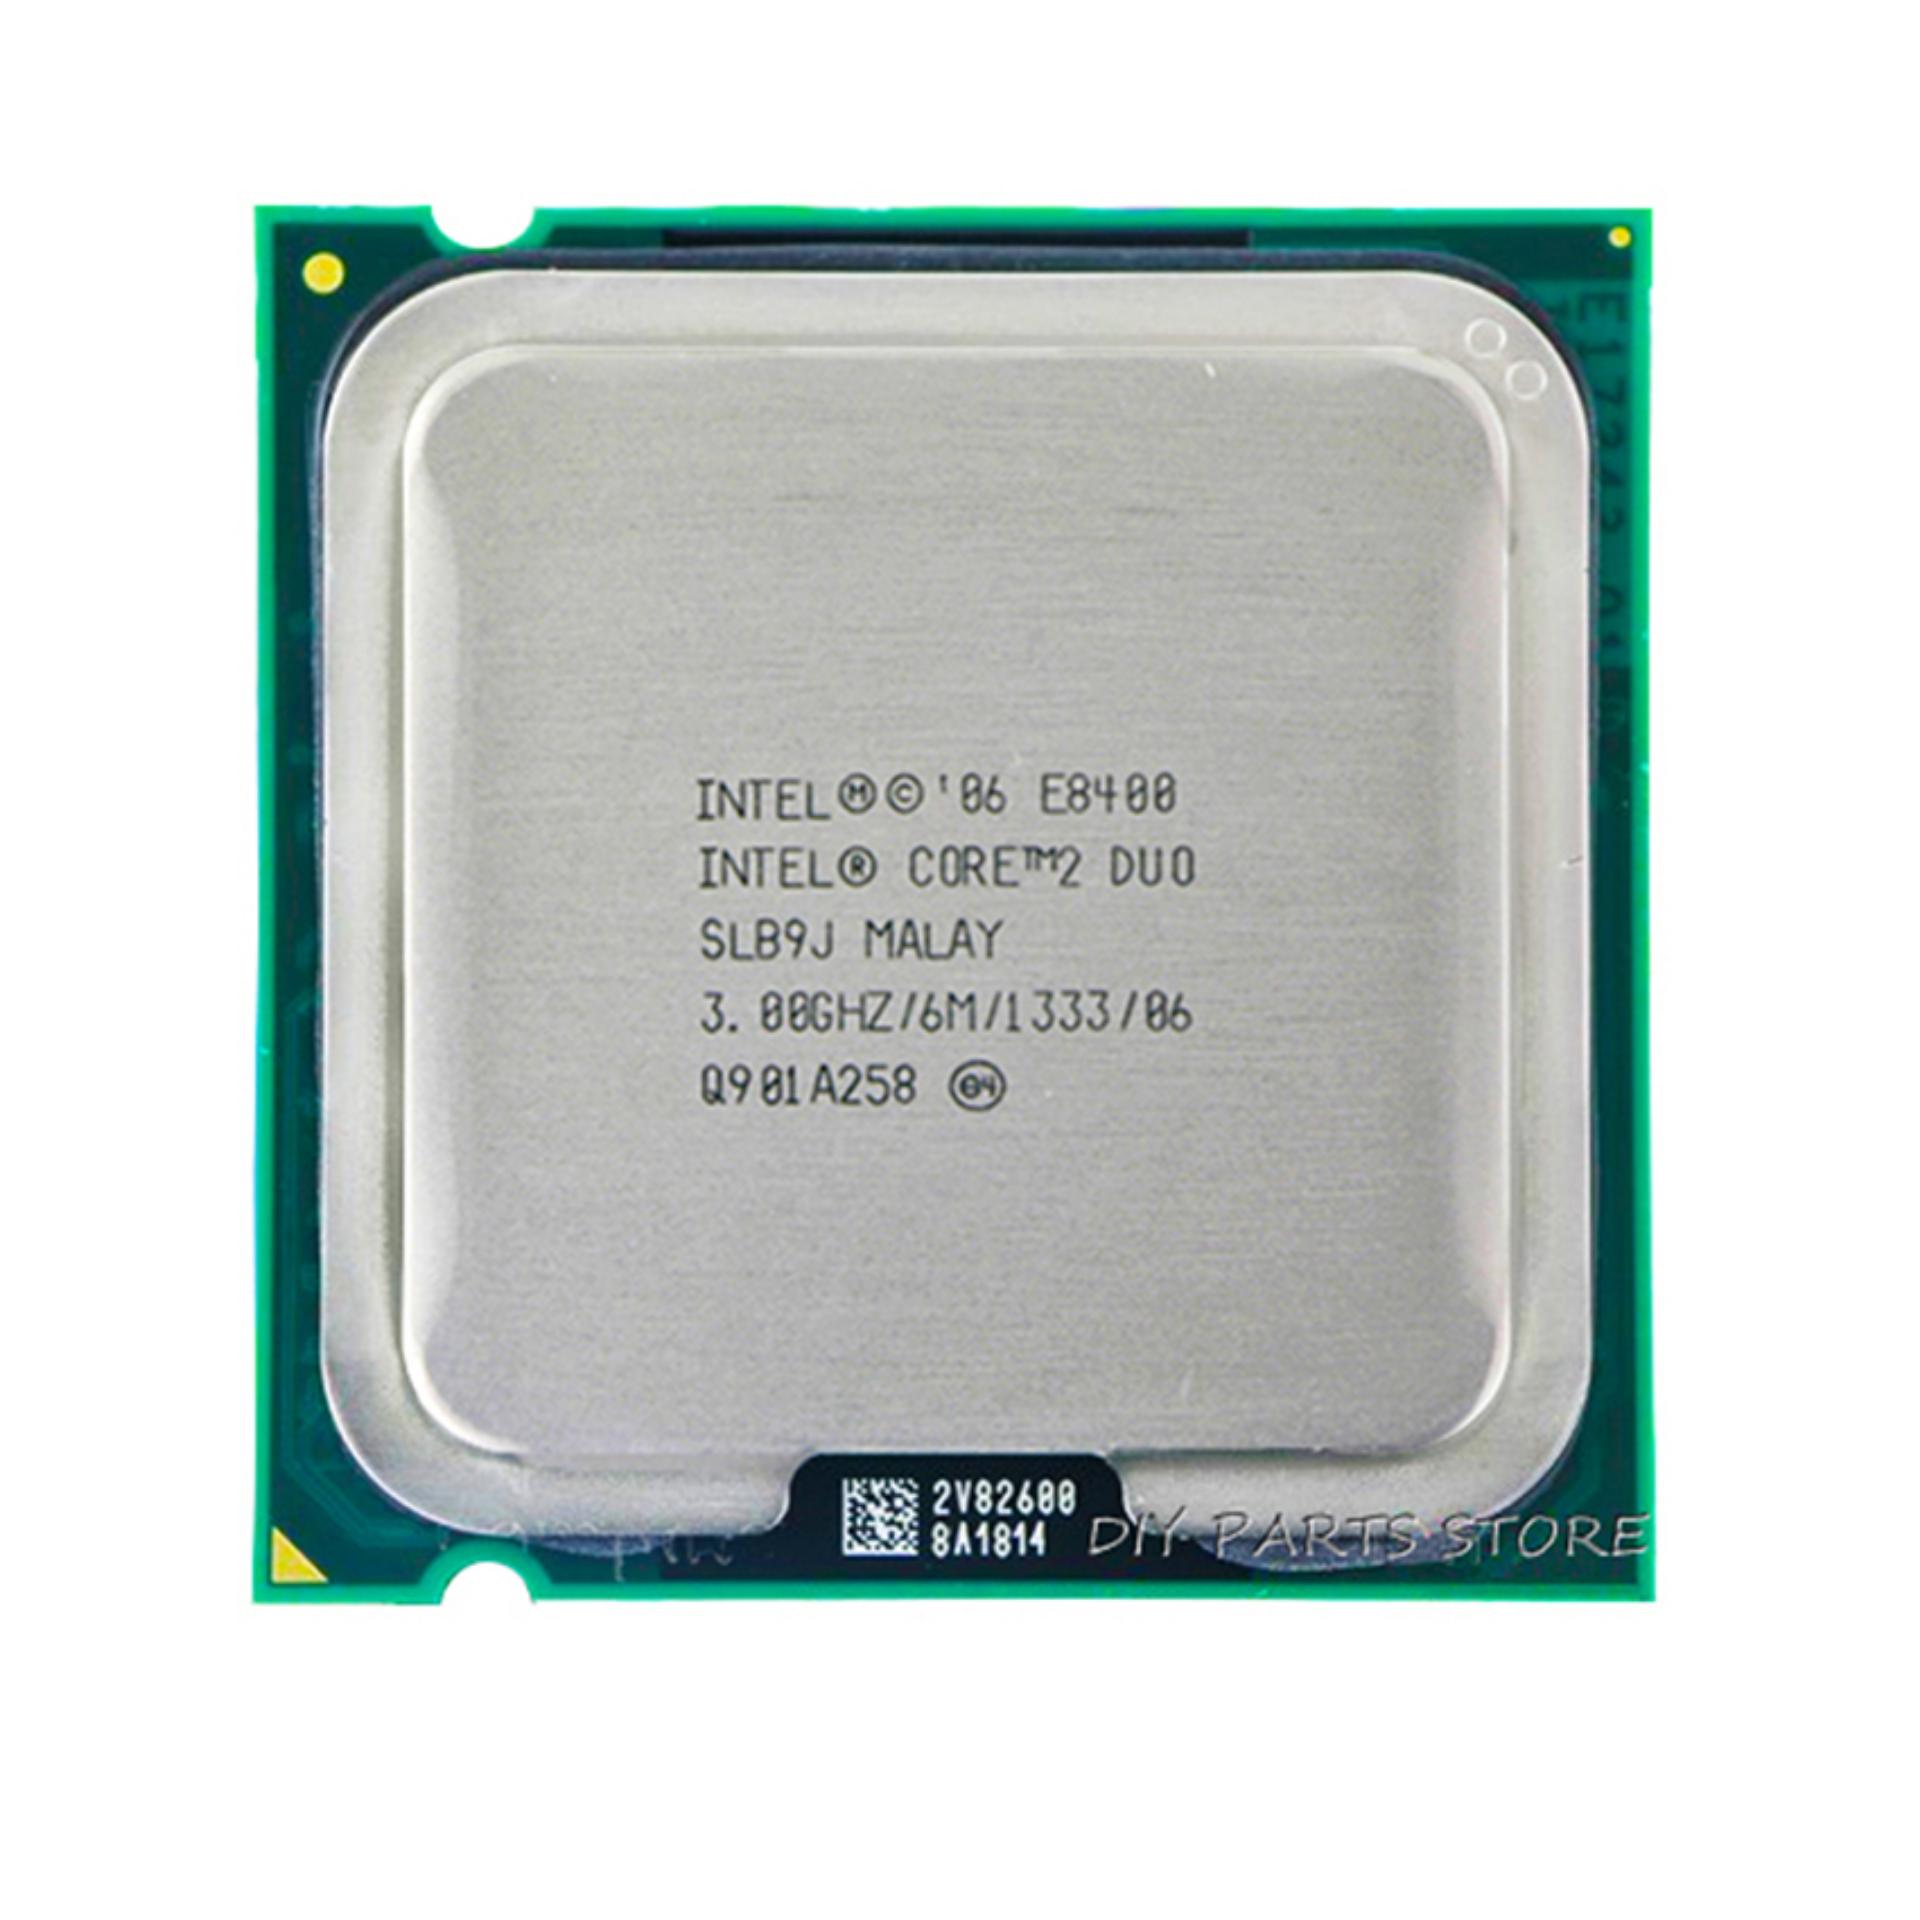 Bộ vi xử lý Intel Core 2 Duo E8400 6M bộ nhớ đệm, 3,00 GHz, 1333 MHz + Tặng keo...